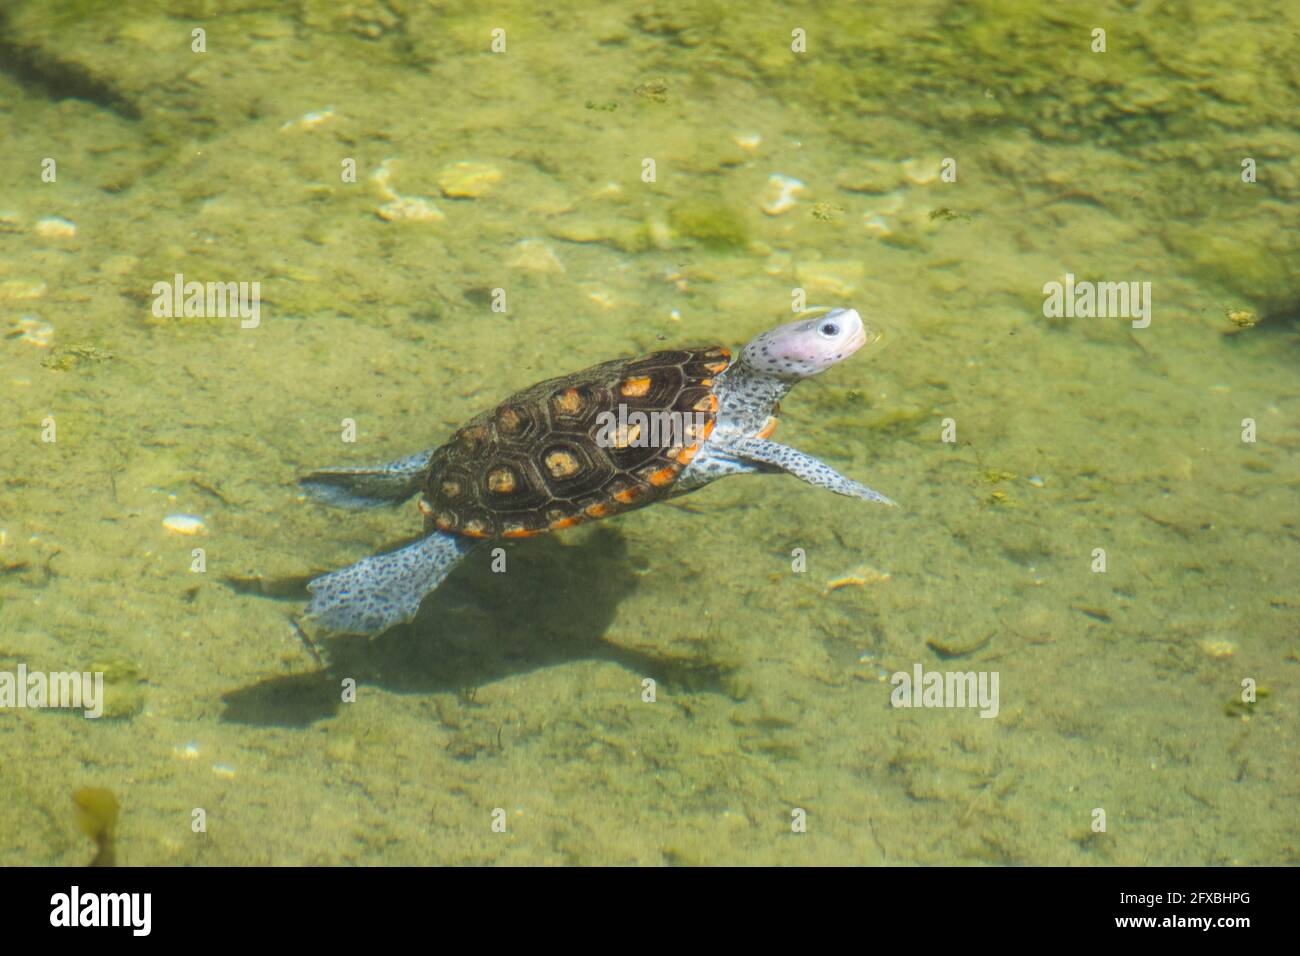 Eine Diamondback Terrapin schwimmt in einem kleinen Teich in einem Tampa Bay Naturschutzgebiet. Die Diamondback Terrapin ist eine bedrohte Schildkrötenart. Stockfoto